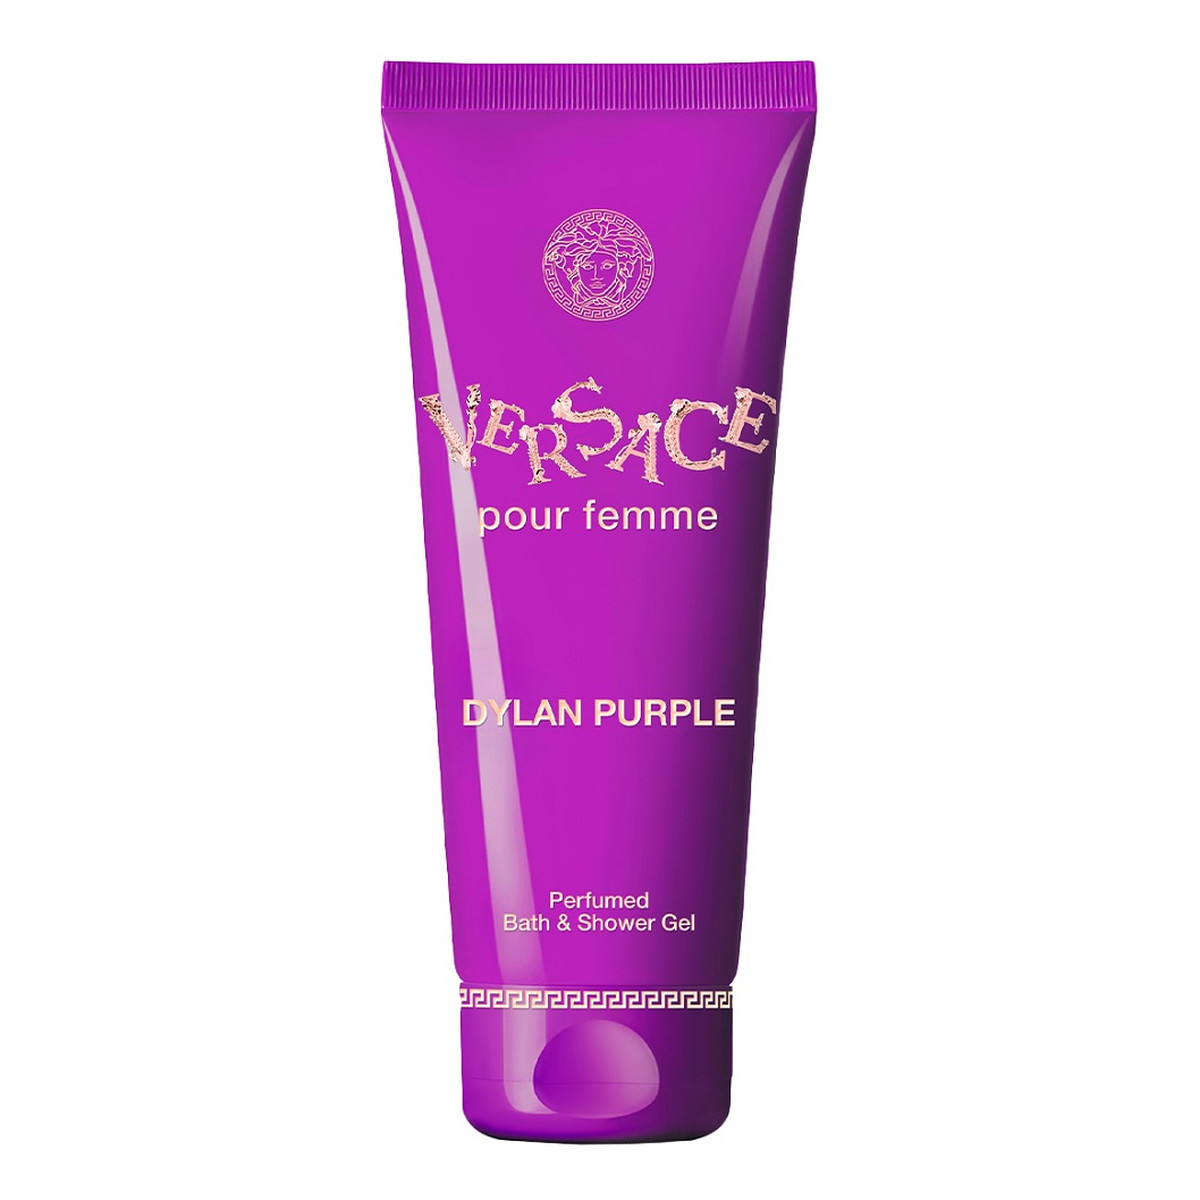 Versace Dylan Purple Pour Femme perfumowany Żel do kąpieli i pod prysznic 200ml